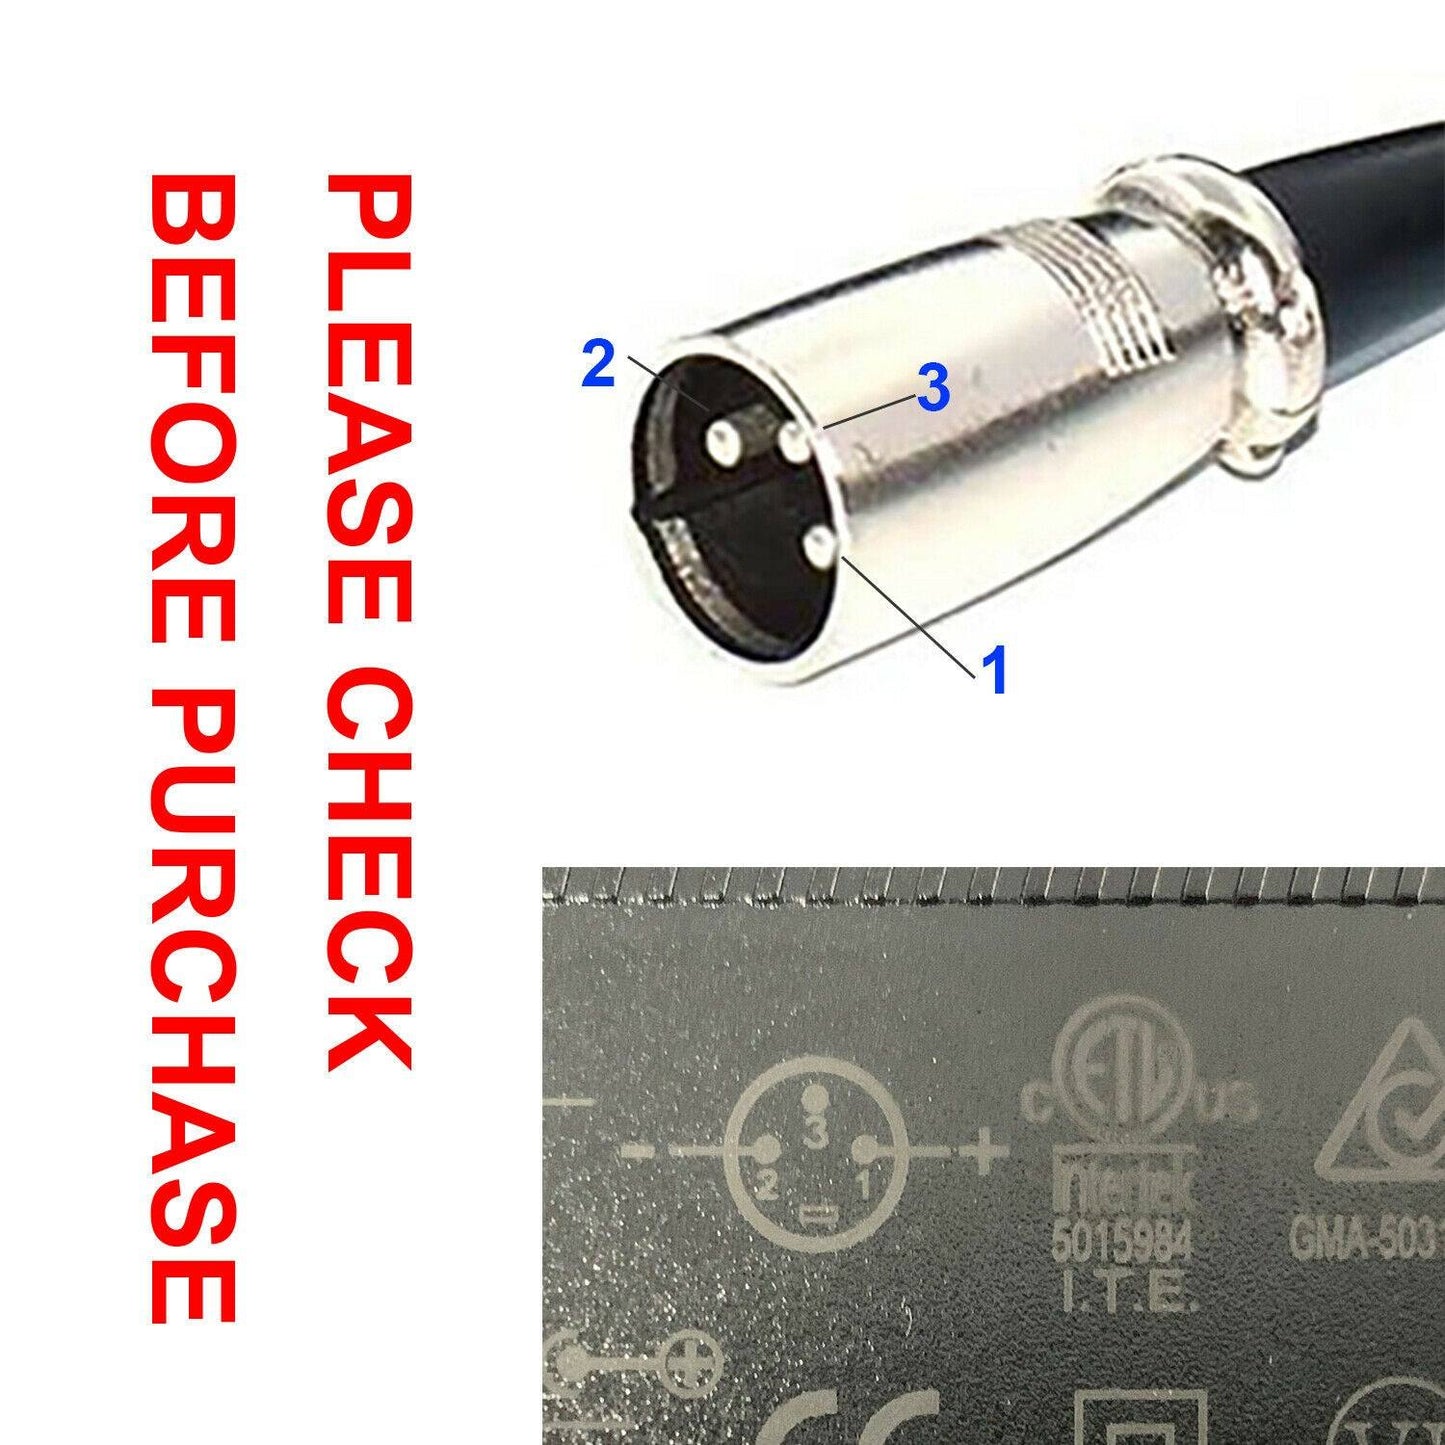 EBike 54.6V (Output) XLR Charger Plug for 48V Battery Electric Bike Scooter - TDRMOTO